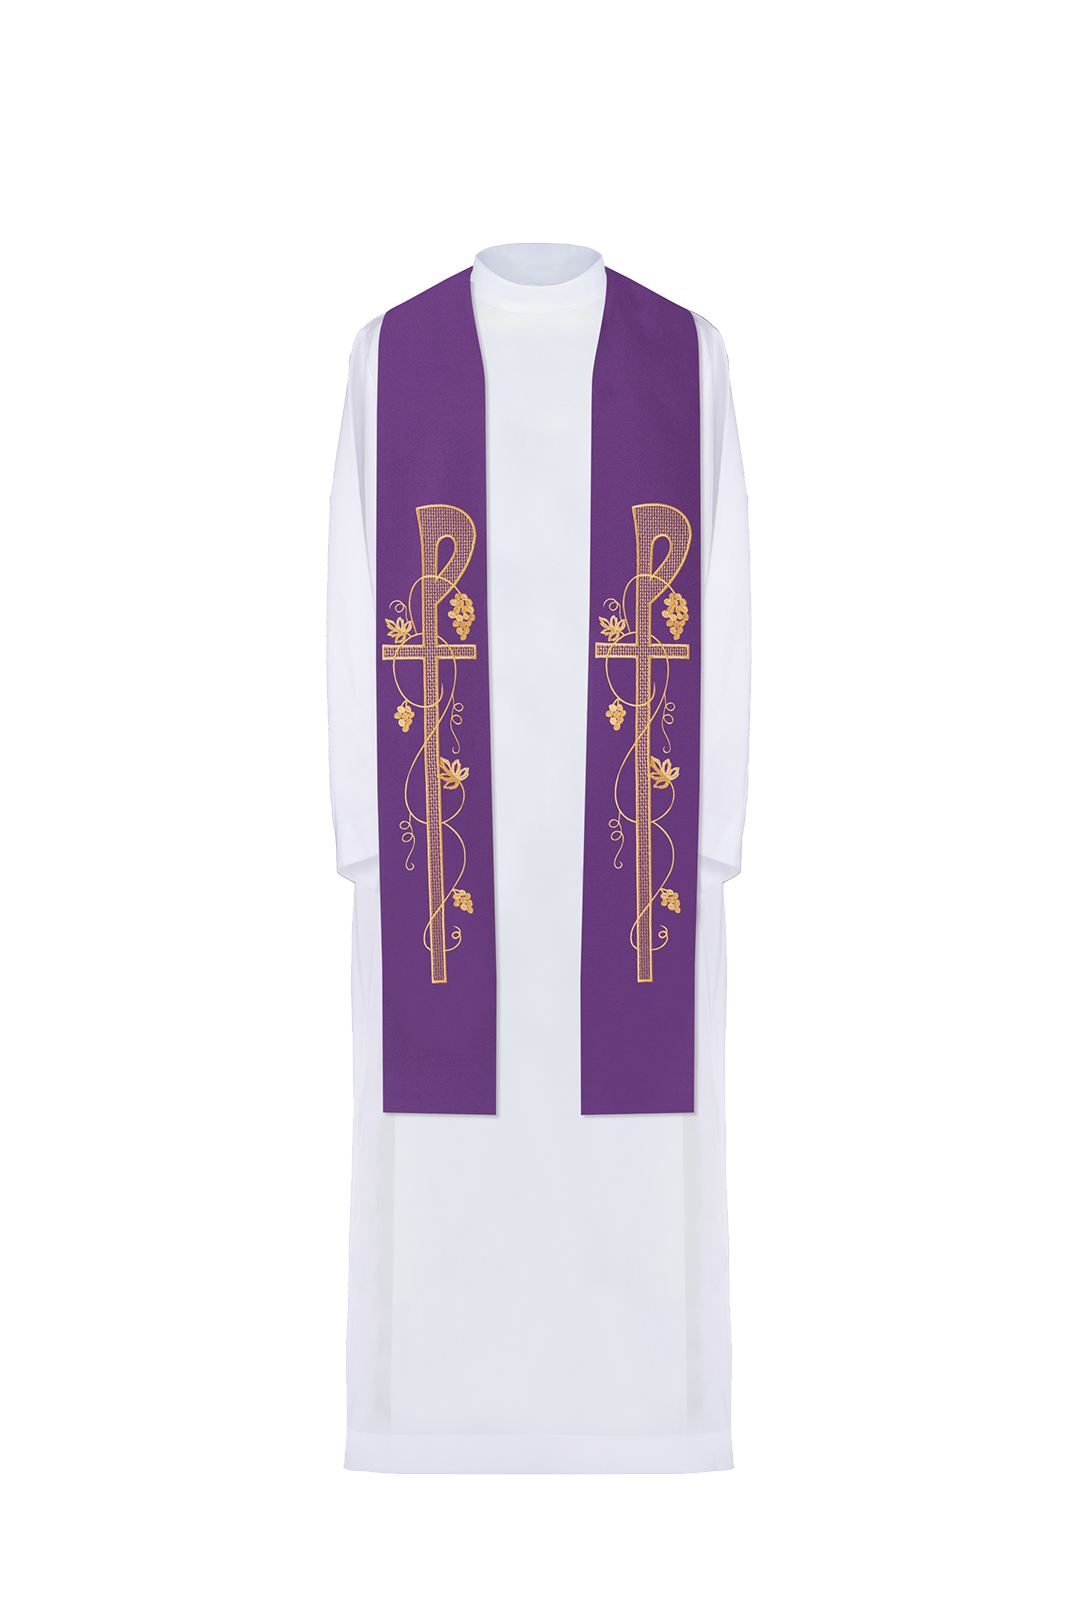 Stuła kapłańska fioletowa haftowana